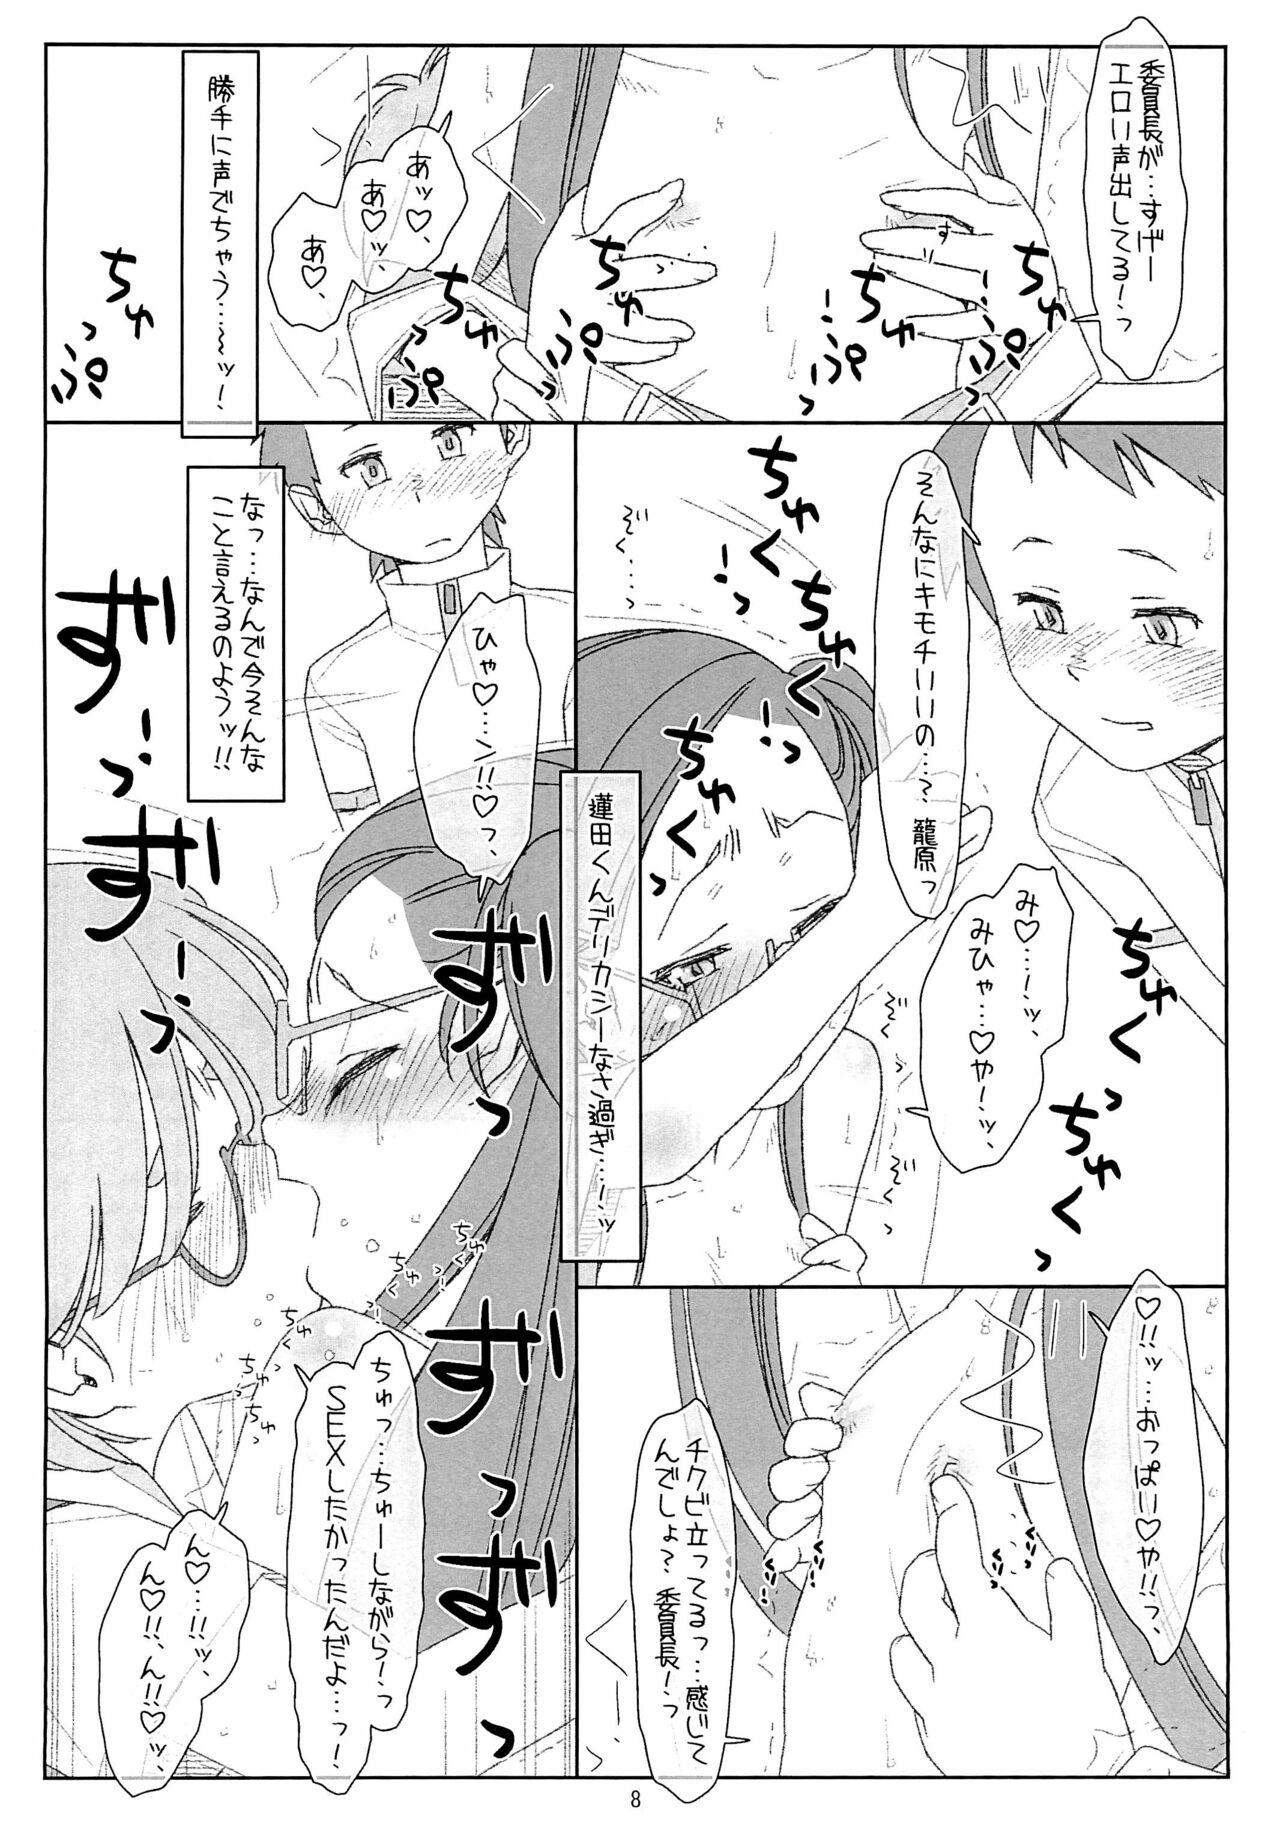 Tall "Bokutachi no Super App" 4 preview ver.2 - Original Hand - Page 8